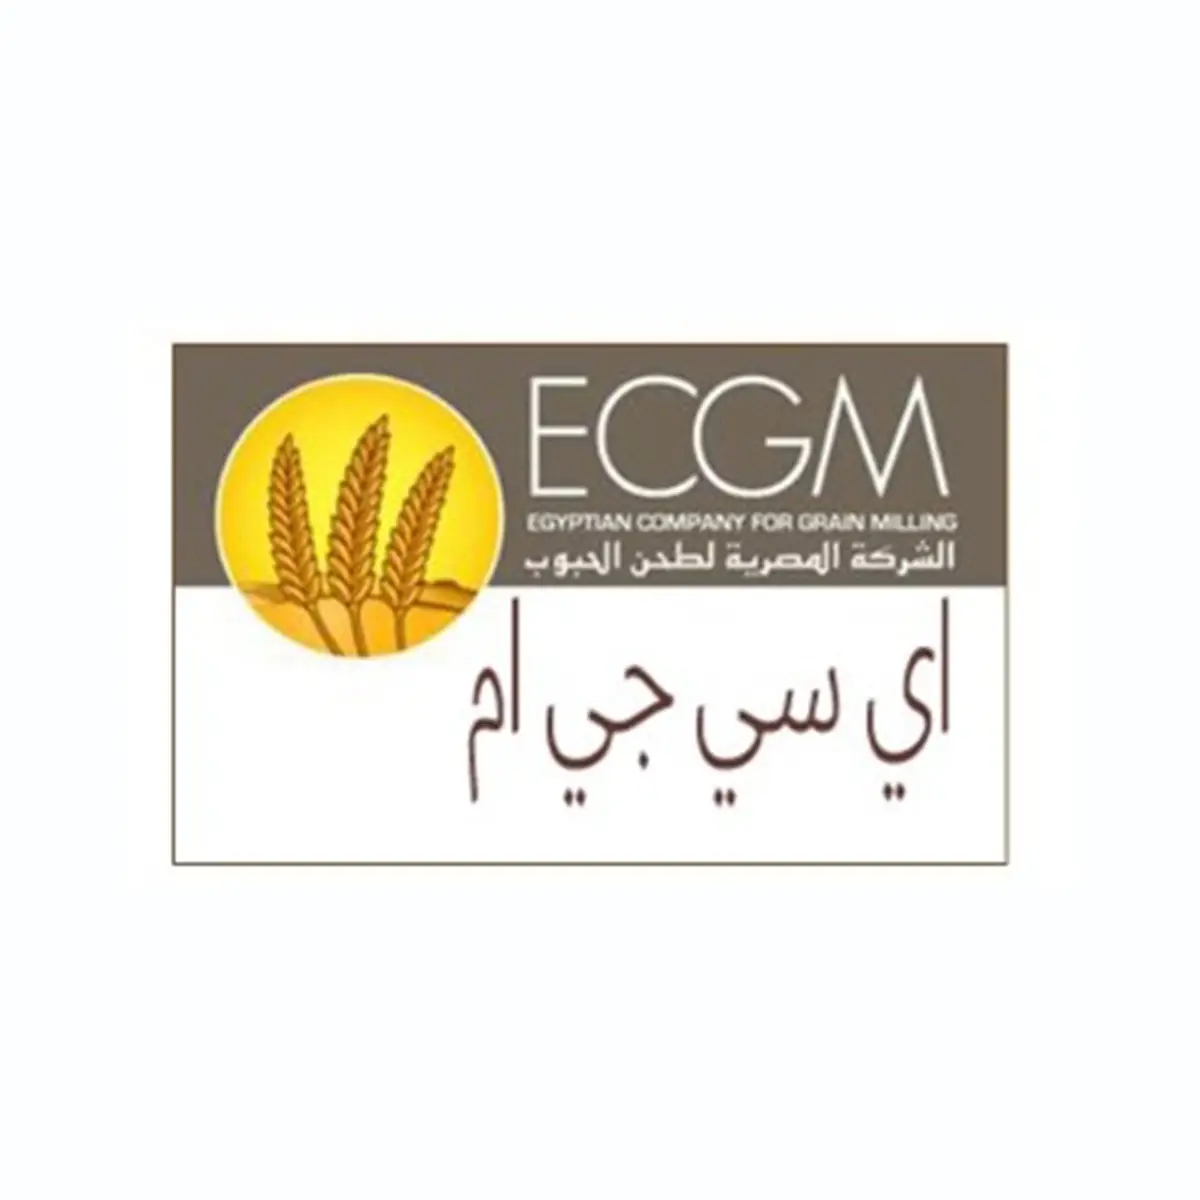 ECGM logo